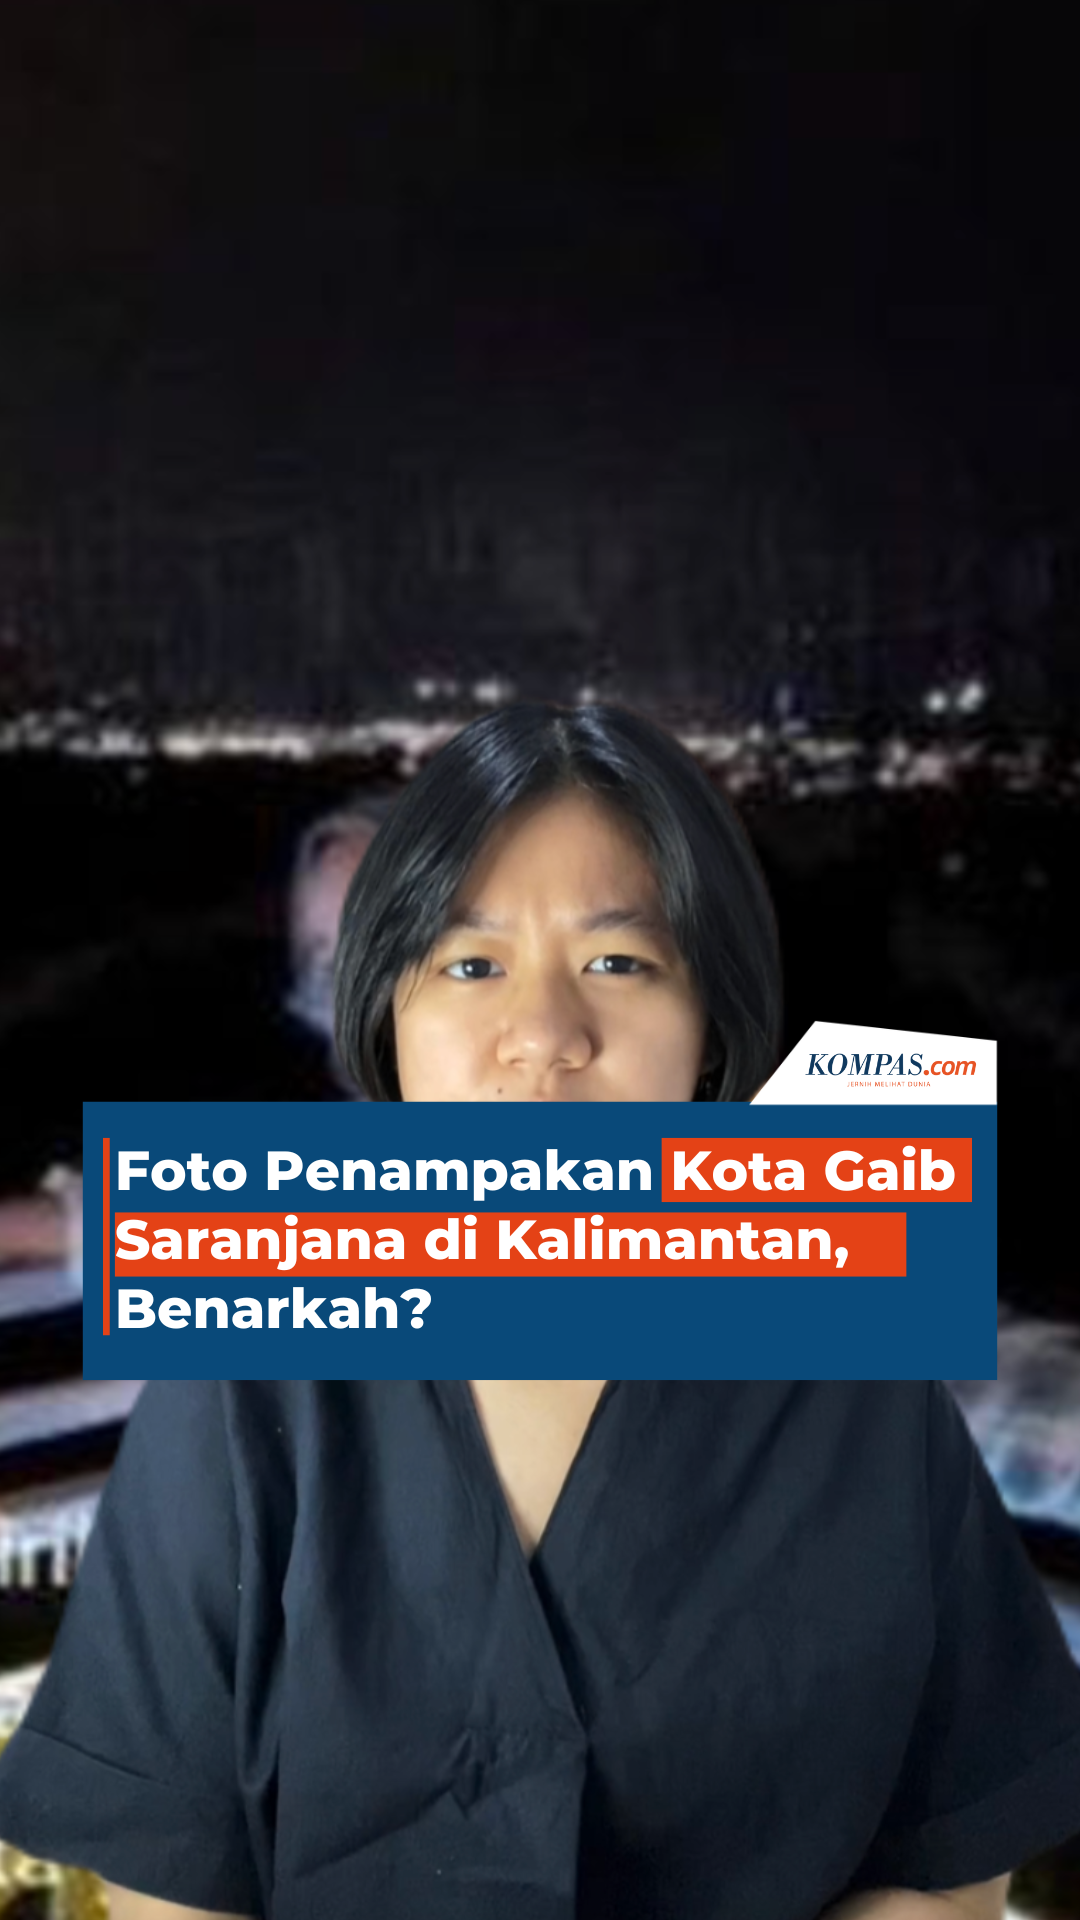 Foto Penampakan Kota Gaib Saranjana di Kalimantan, Benarkah?